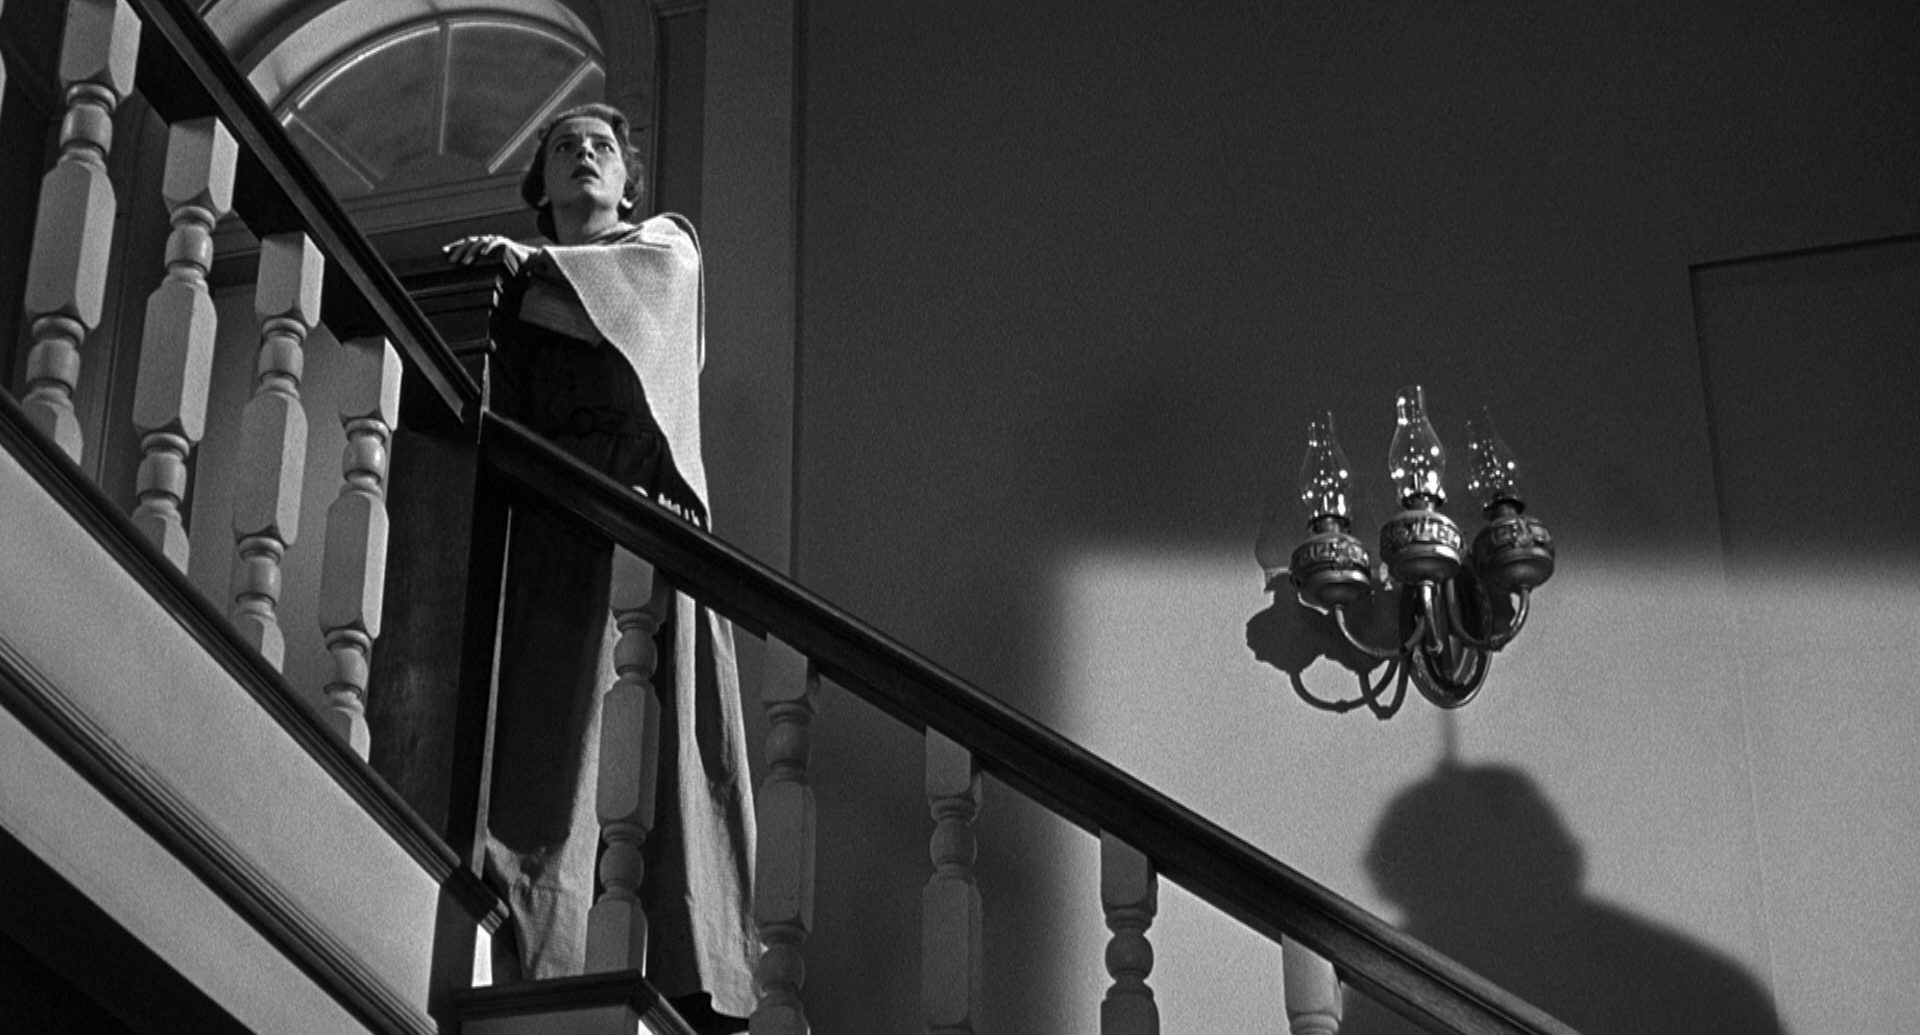 Leora Dana als Alice Evans auf der Hoteltreppe; sie starrt mit schockiertem Blick in Richtung Gebäudedecke, ein Schatten rechts unten im Bild deutet einen aufgeknüpften Mann an.